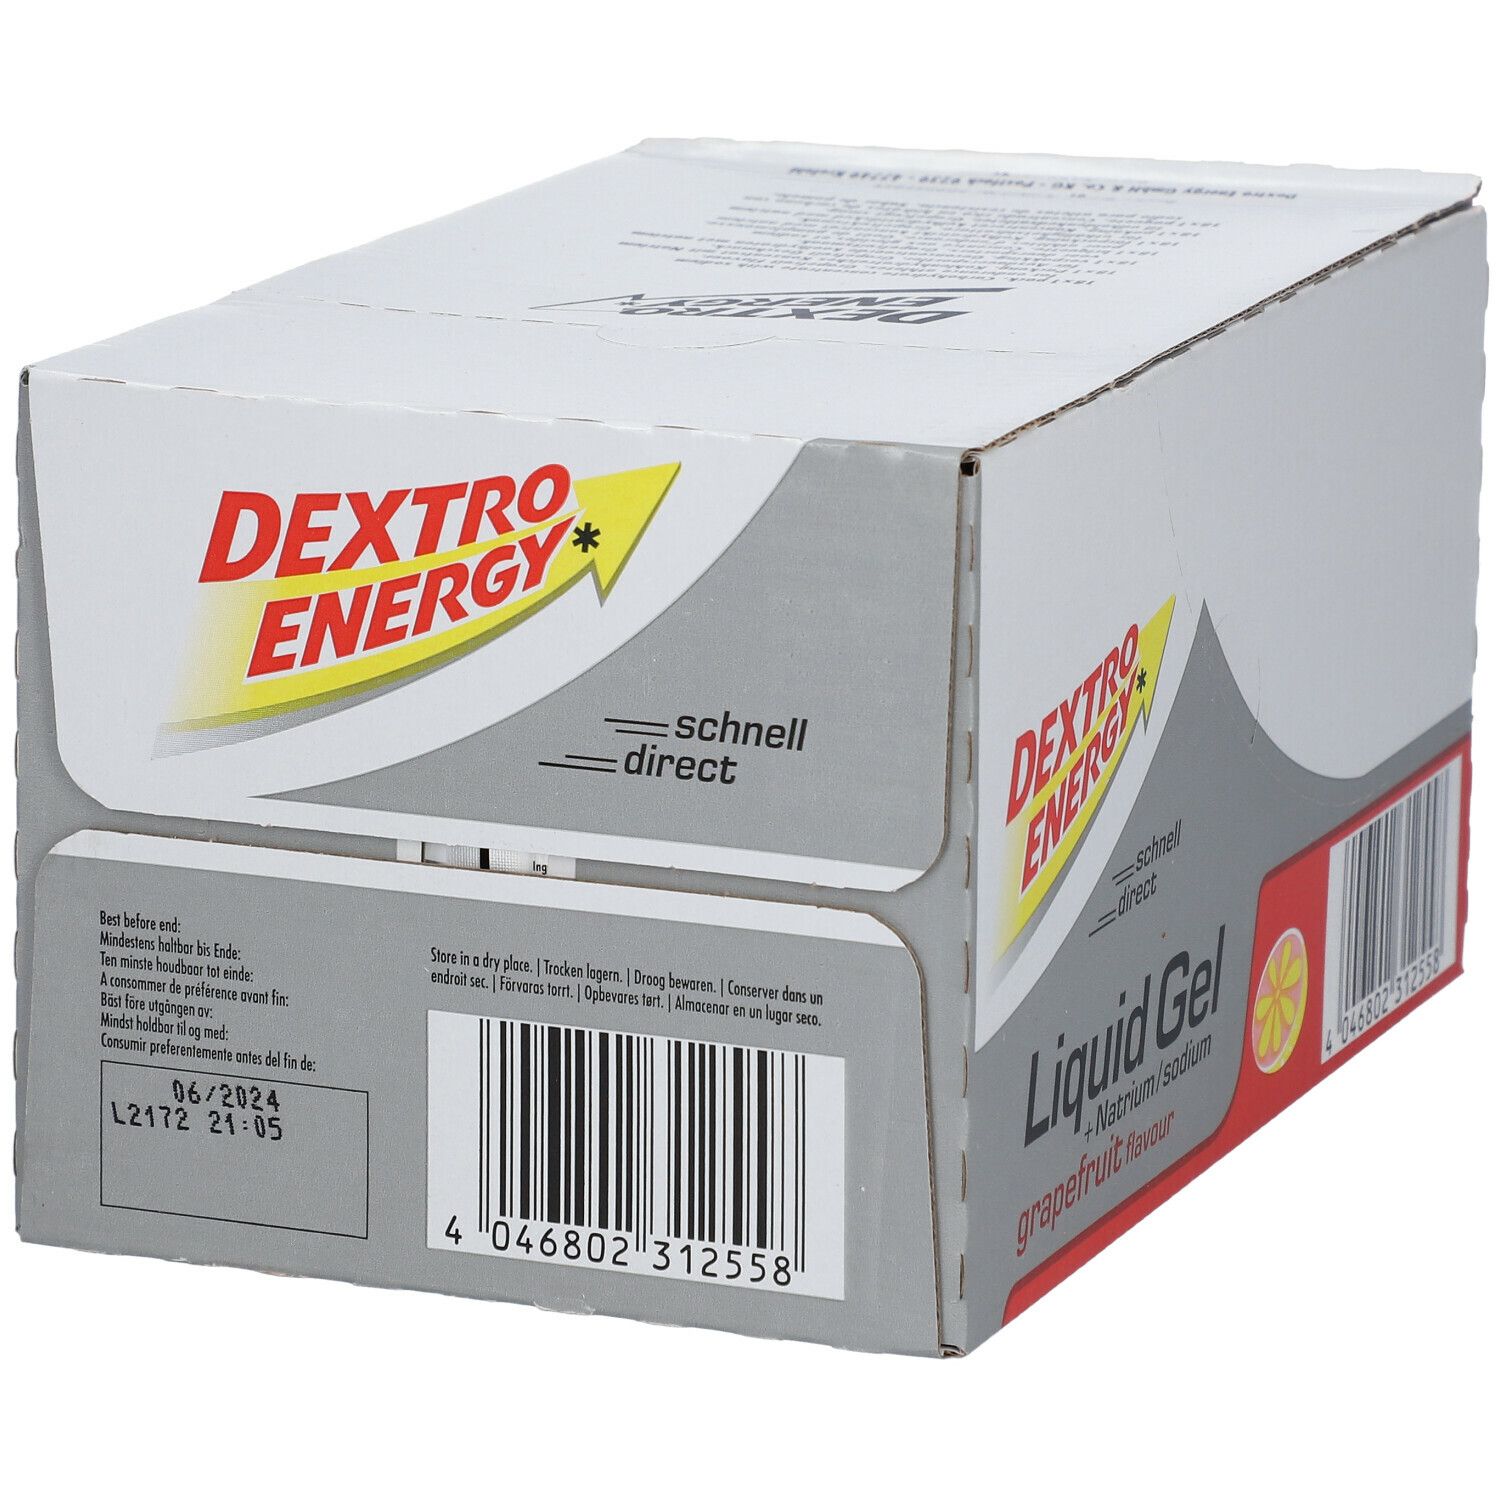 Dextro Energy Liquid Gel Grapefruit + Natrium